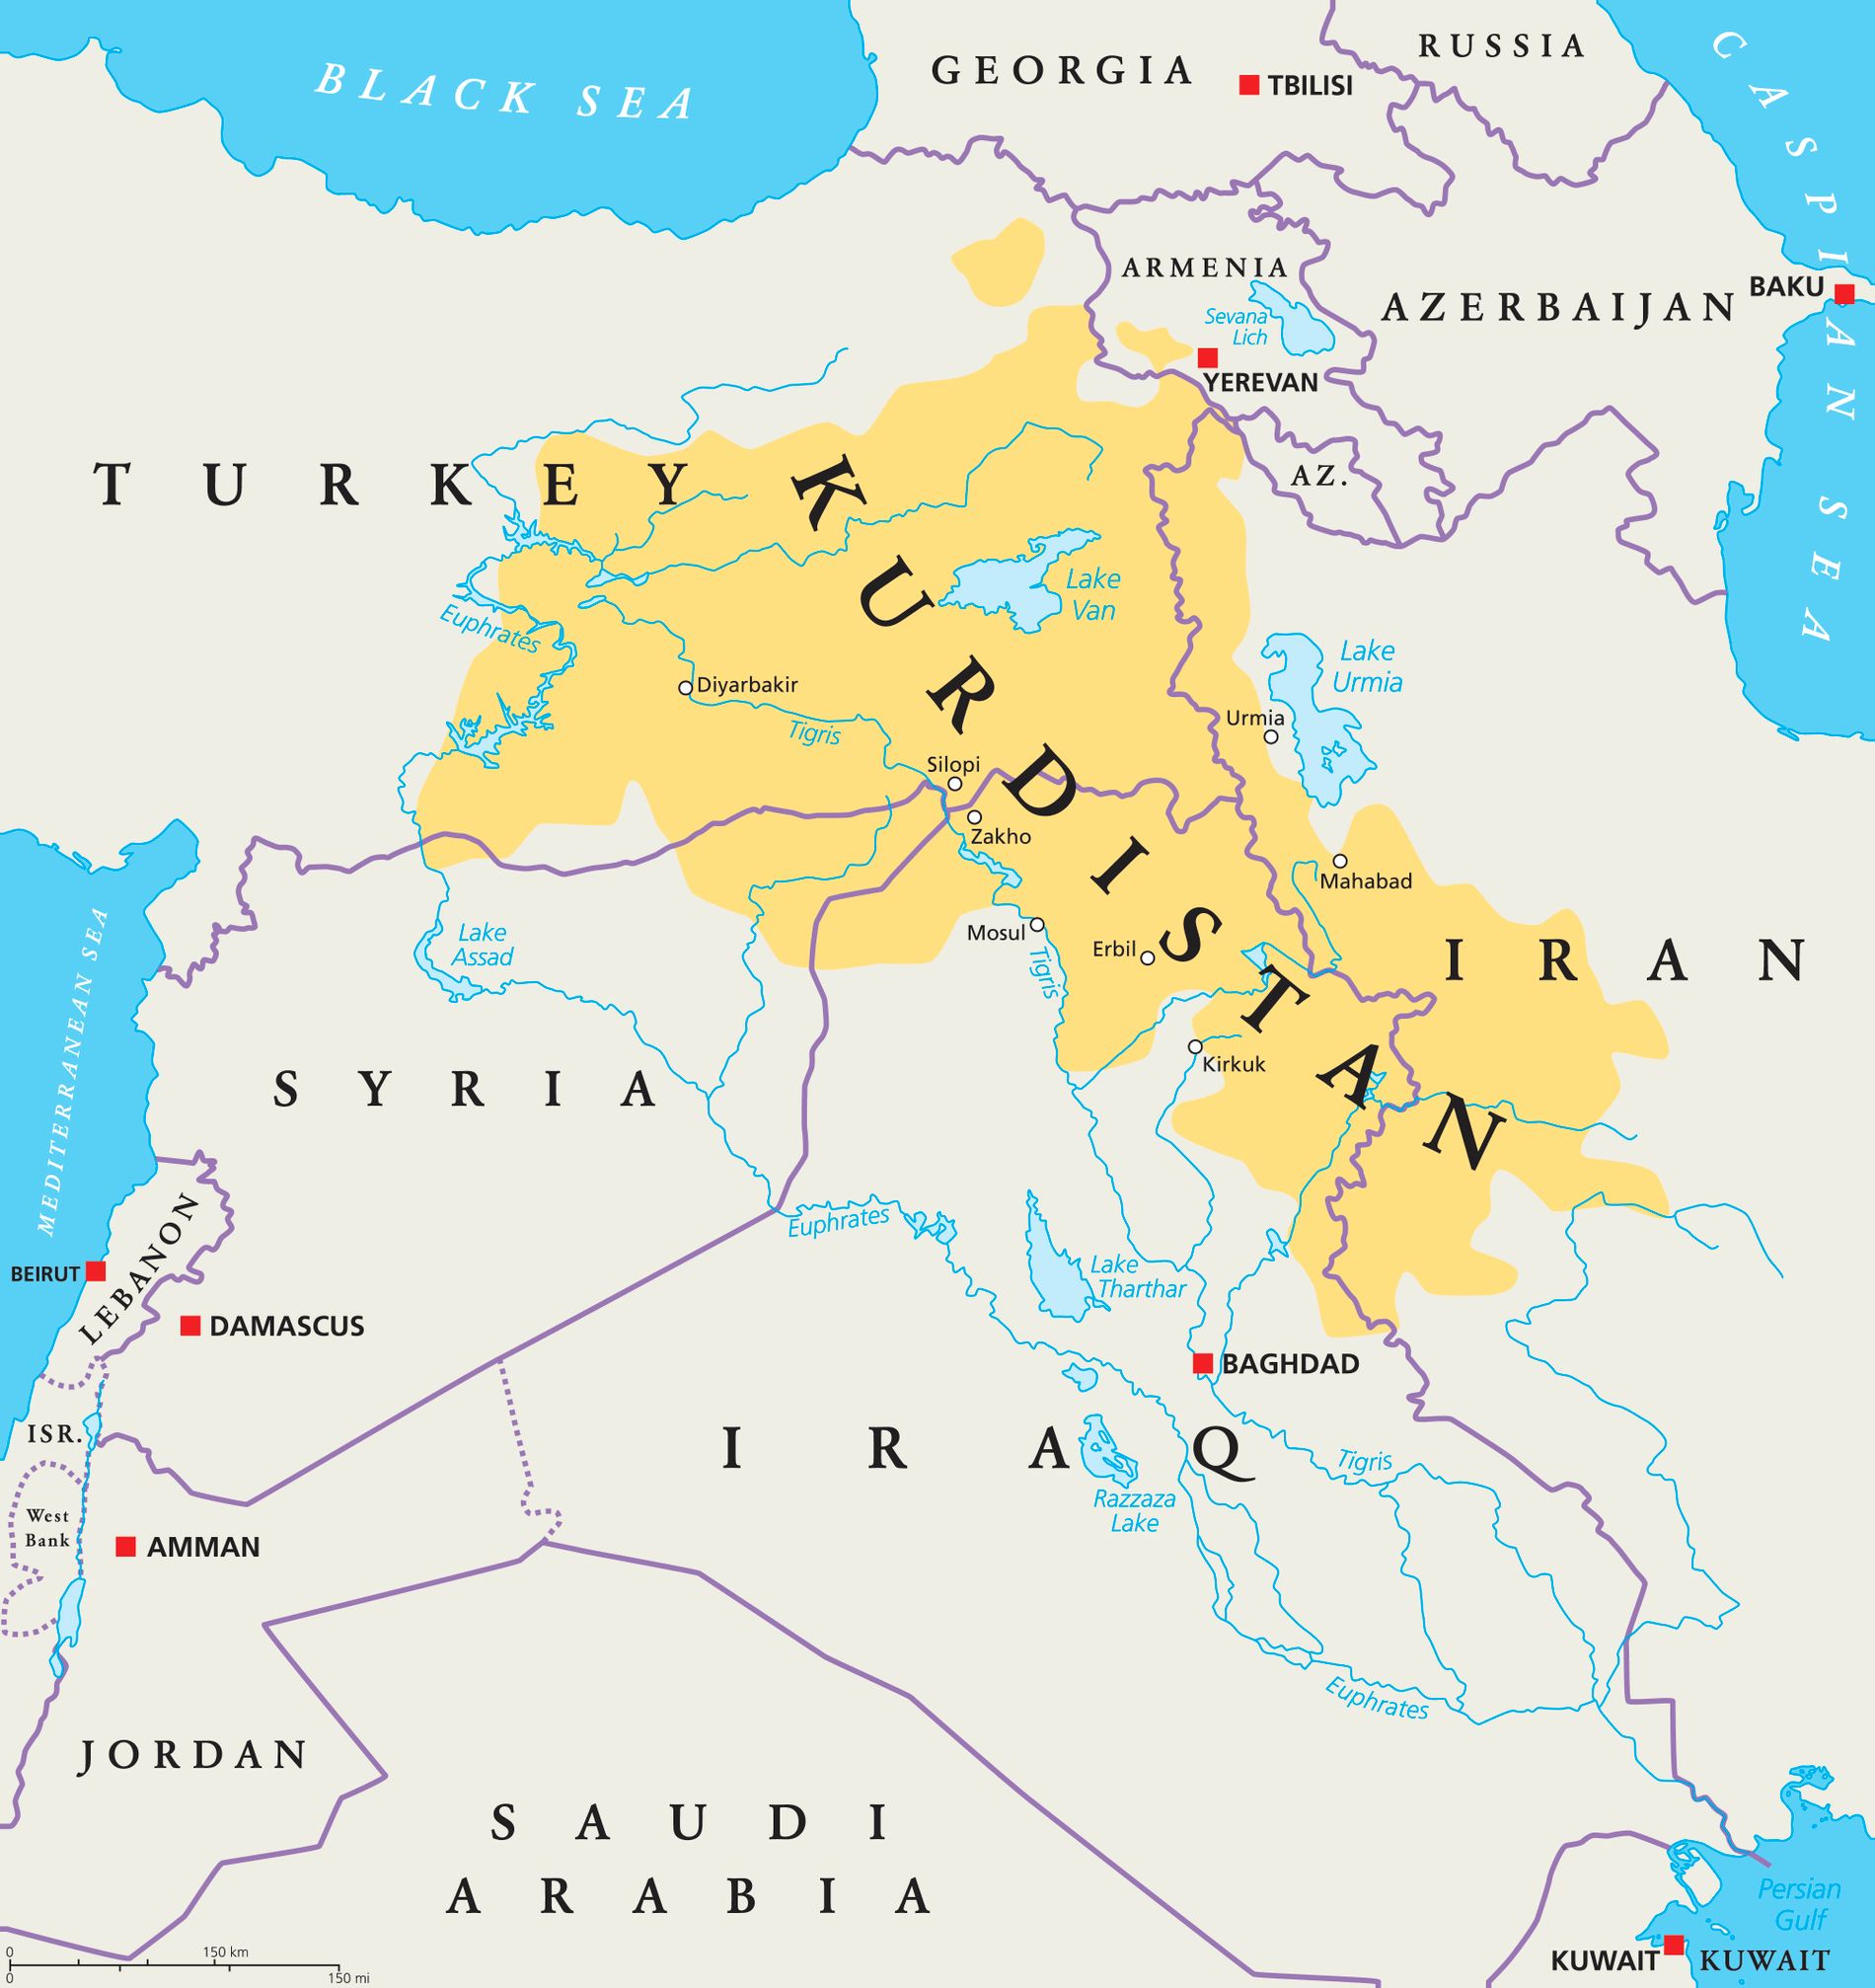 Den här moderna kartan visar Kurdistan i dag (det område som domineras av kurdisk befolkning). 